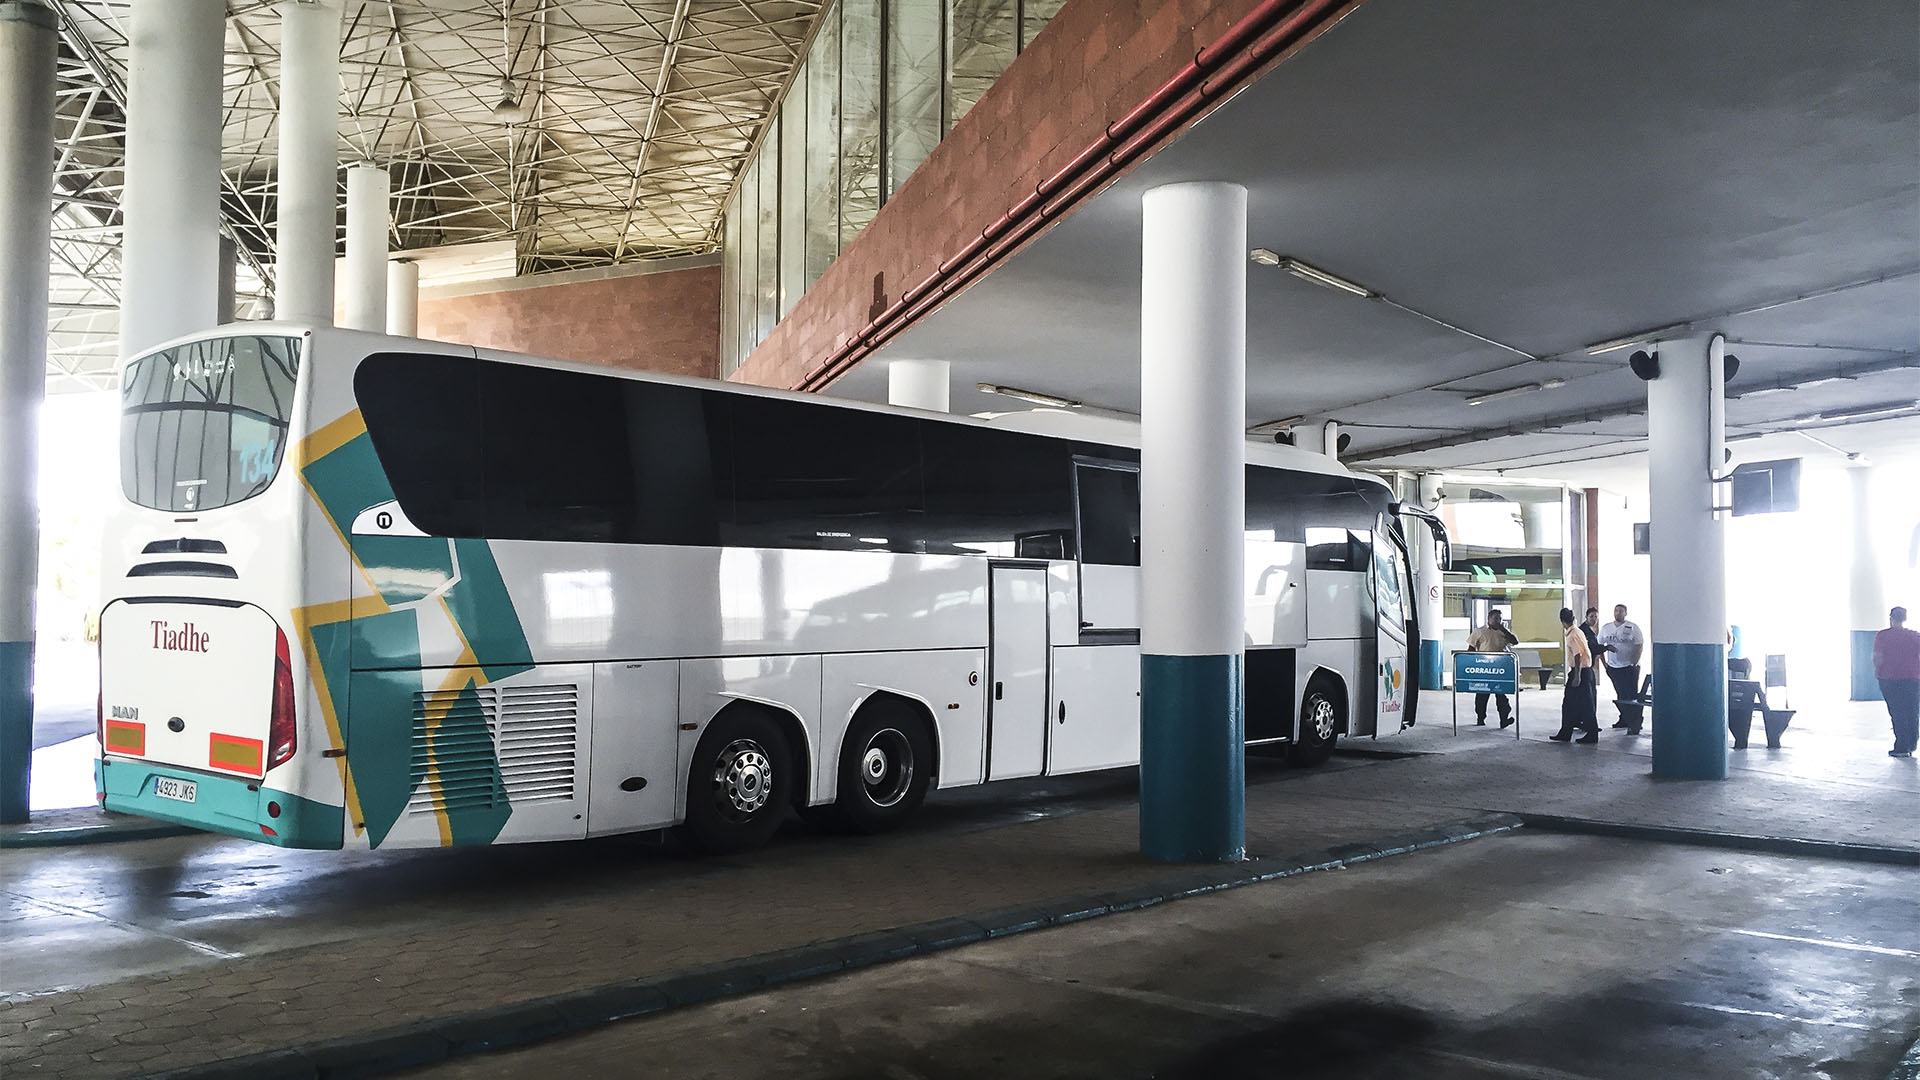 Unterwegs auf Fuerteventura mit öffentlichen Verkehrsmitteln – Bus und Taxi.